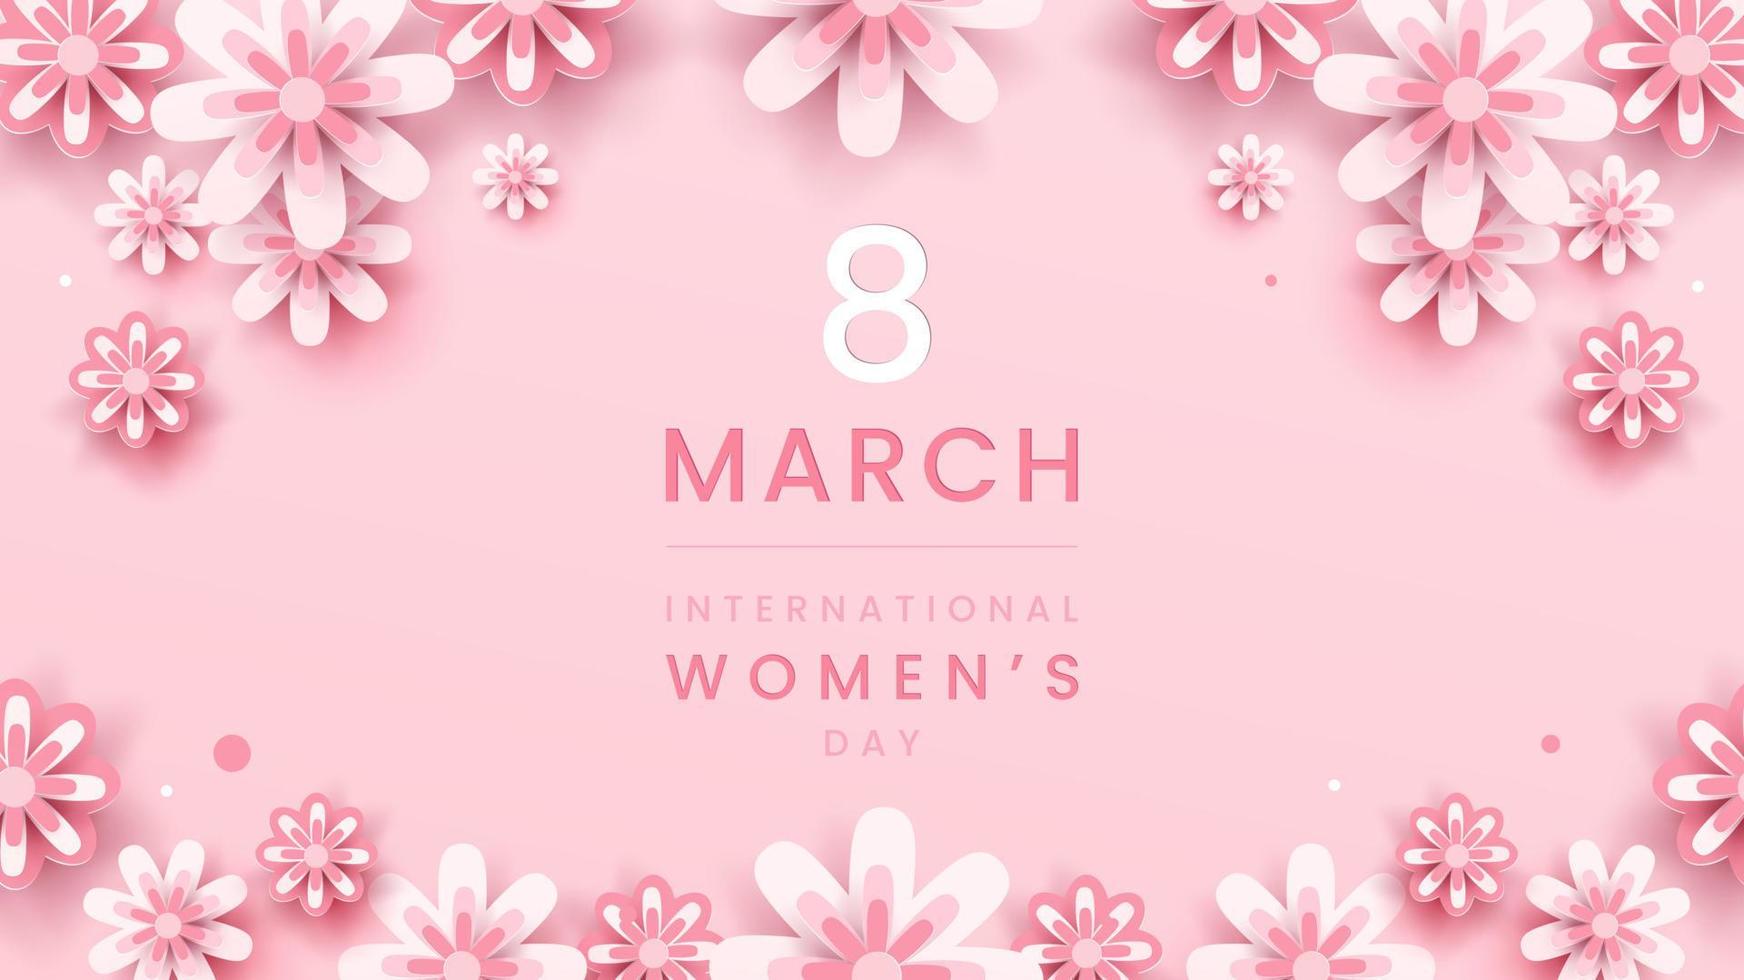 Sfondo dell'8 marzo. decorazioni floreali per la festa della donna in stile paper art con cornice di fiori biglietto di auguri su tonalità rosa pastello. illustrazione vettoriale